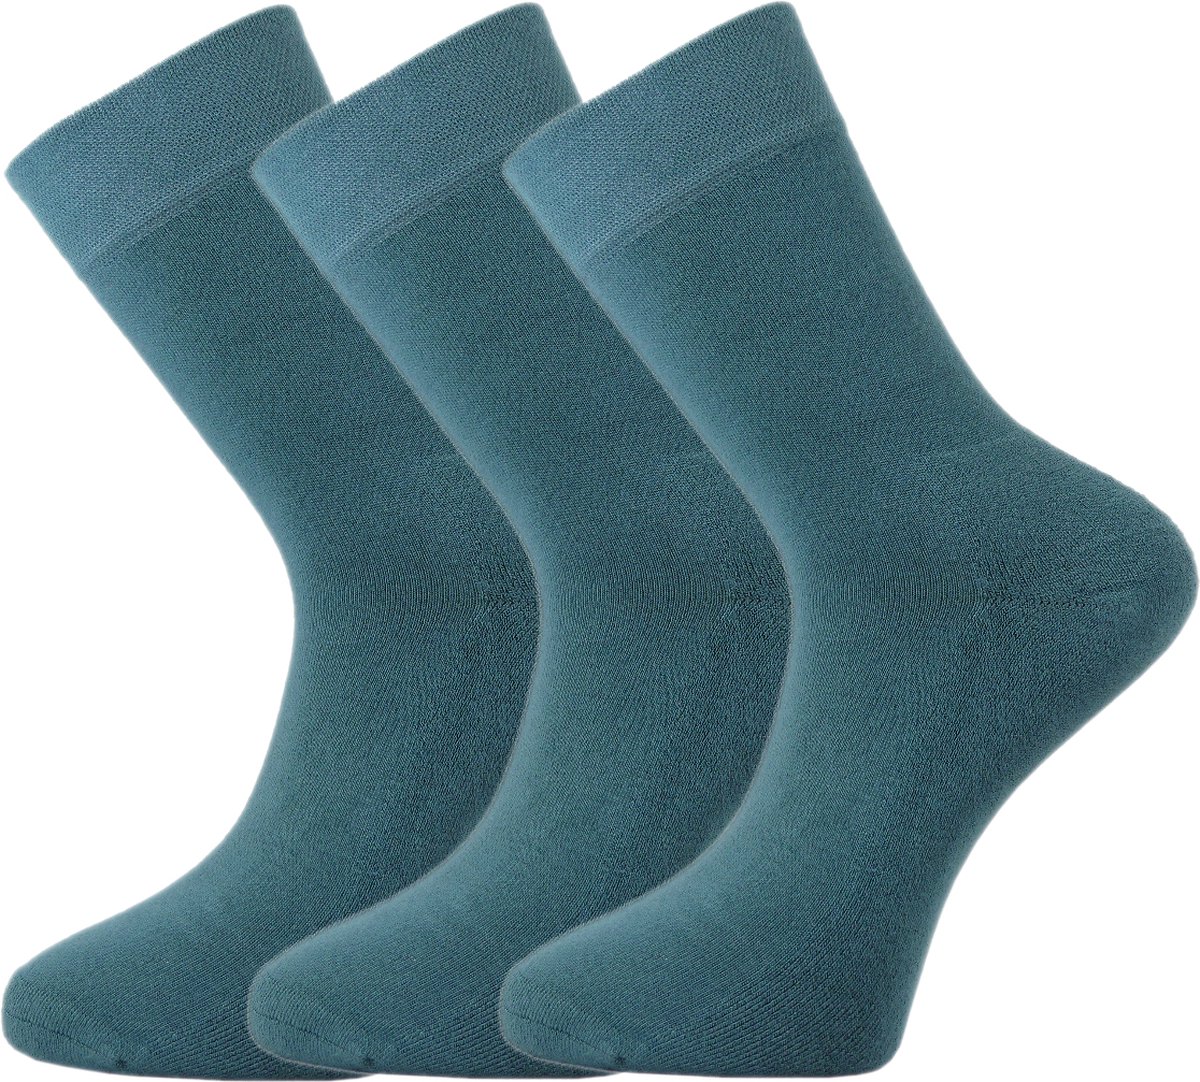 Bamboe sokken - 3 paar - Groenblauw - Teal - Maat 38-39